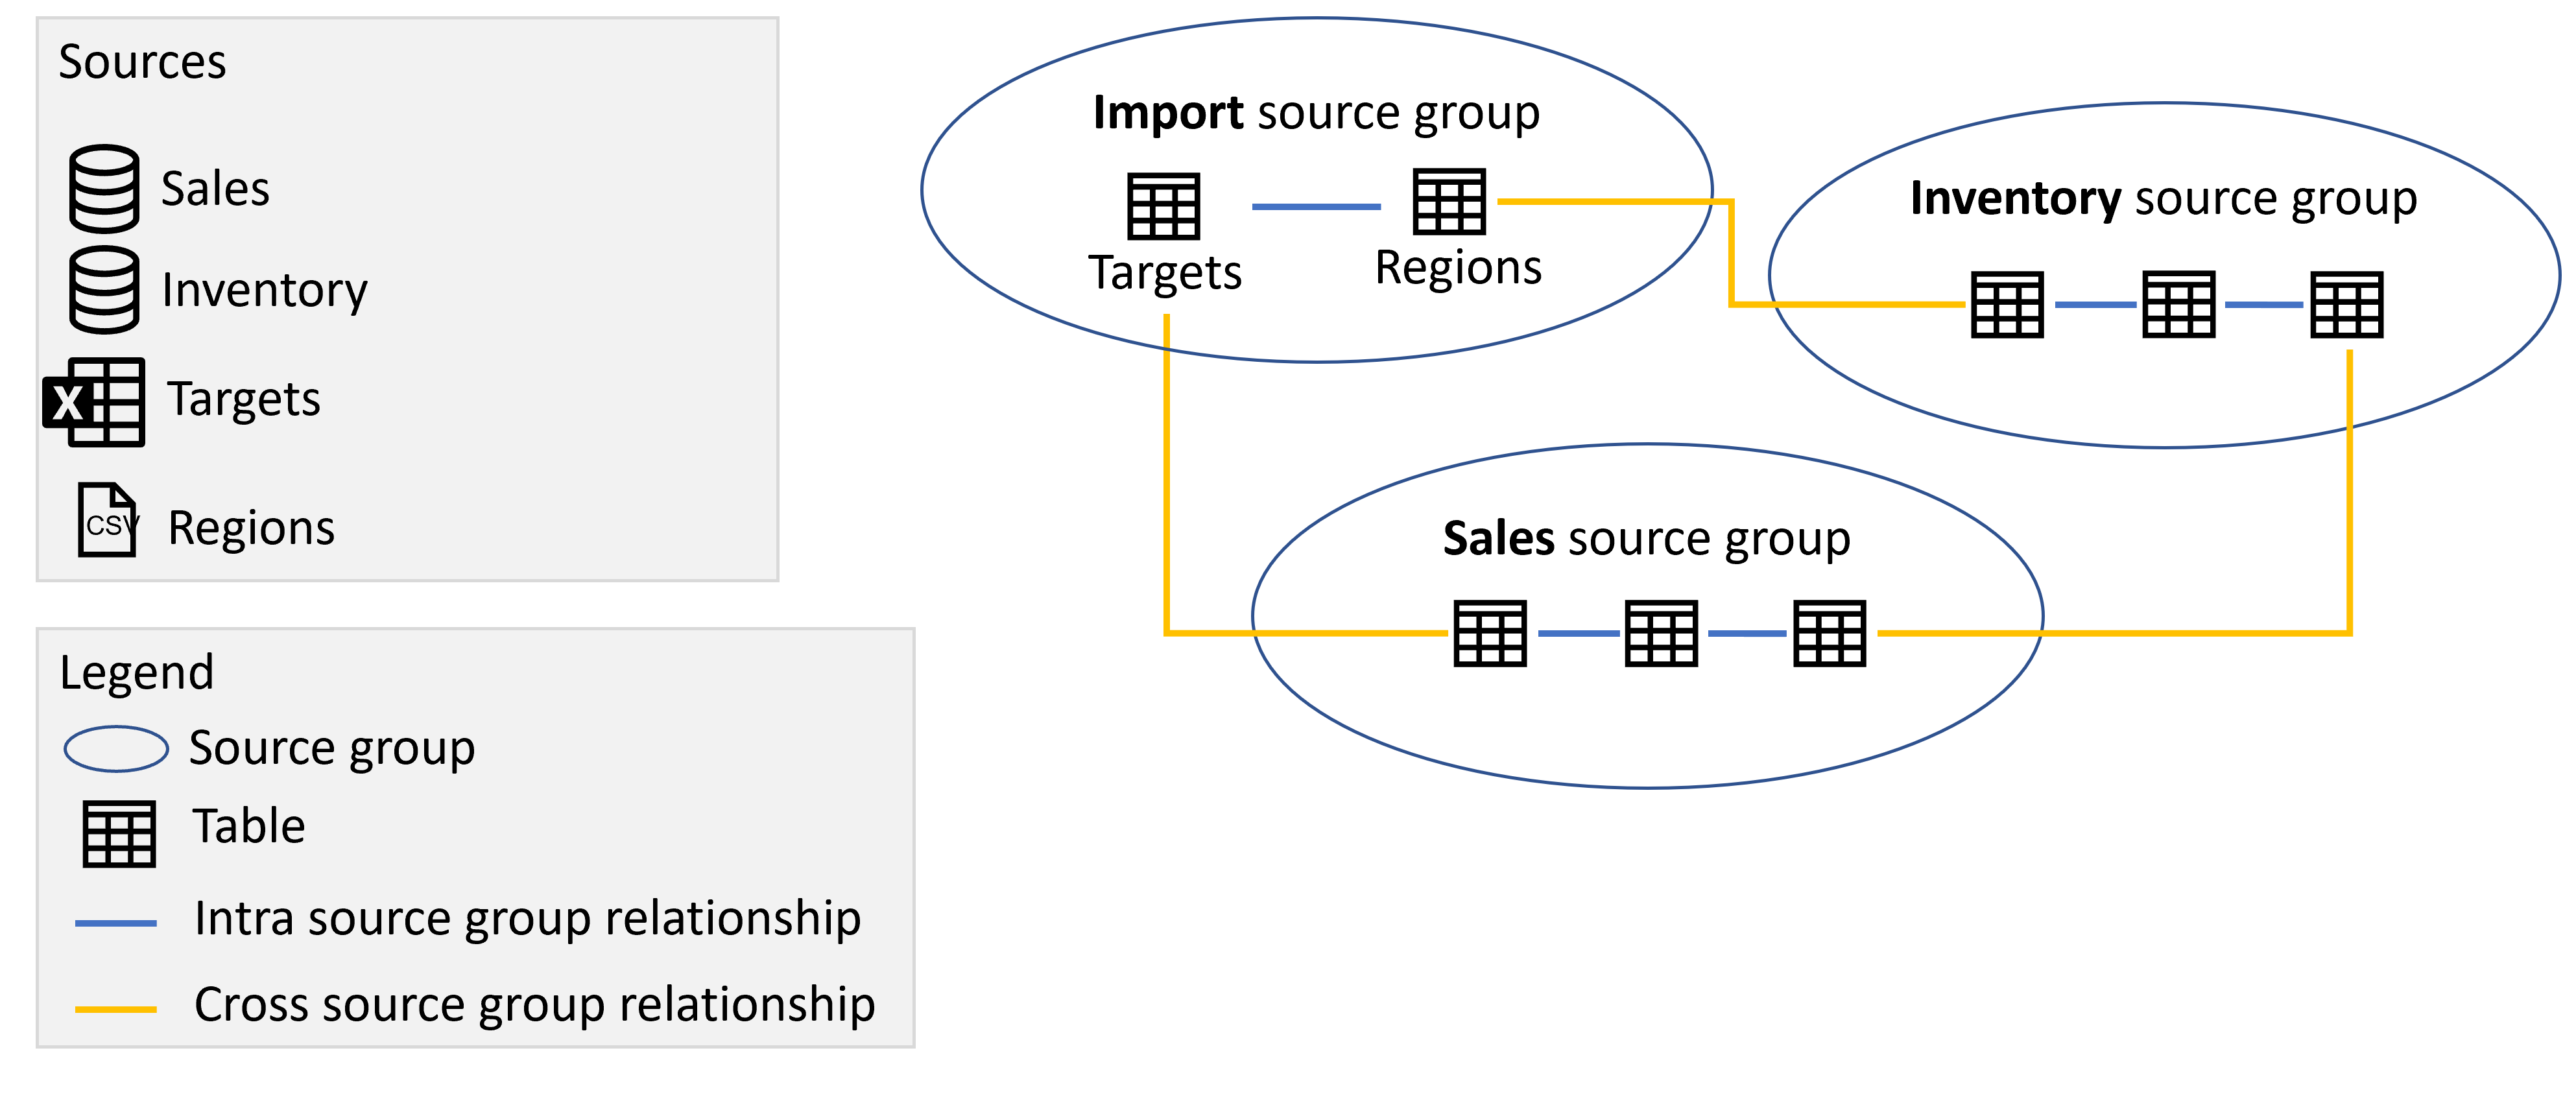 此圖顯示匯入、銷售及清查來源群組，其中包含來自來源群組的數據表，以及來源群組之間的關聯性，如先前所述。